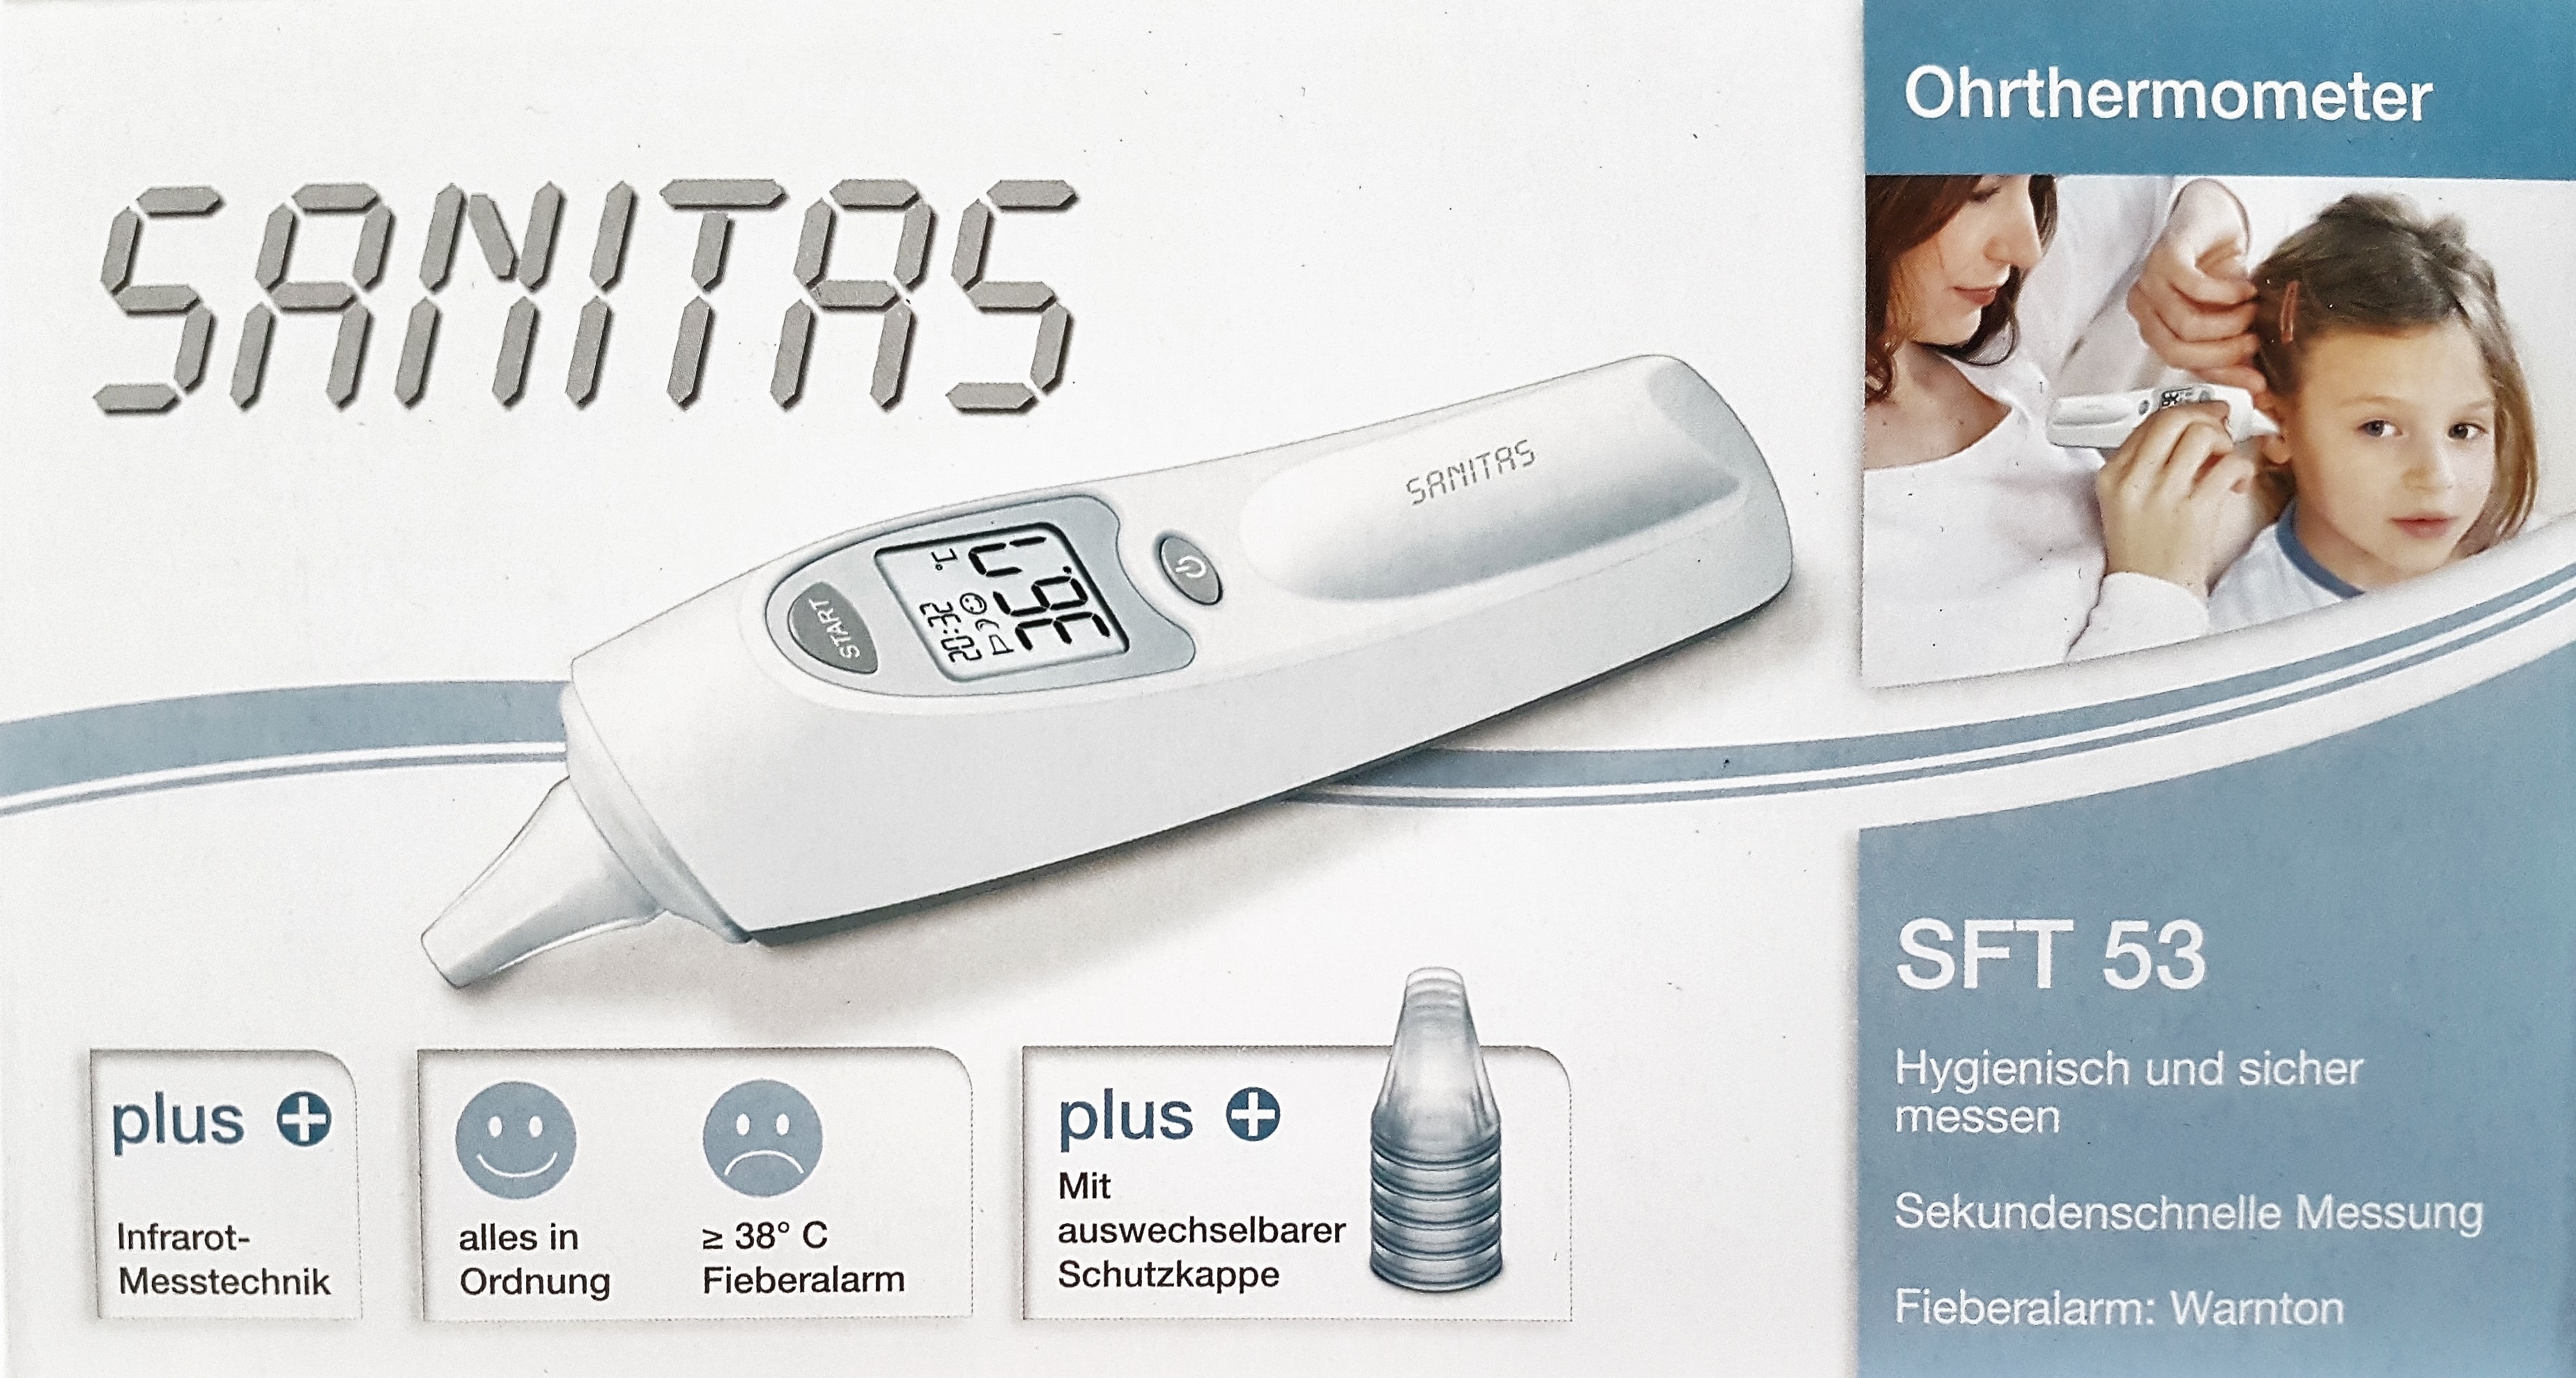 Sanitas Ohrthermometer Sekunde messen für und 1 Kinder mit Erwachsene. oder sicher Hygienisch | Infrarot Messtechnik. Buymix Ergebnis. In